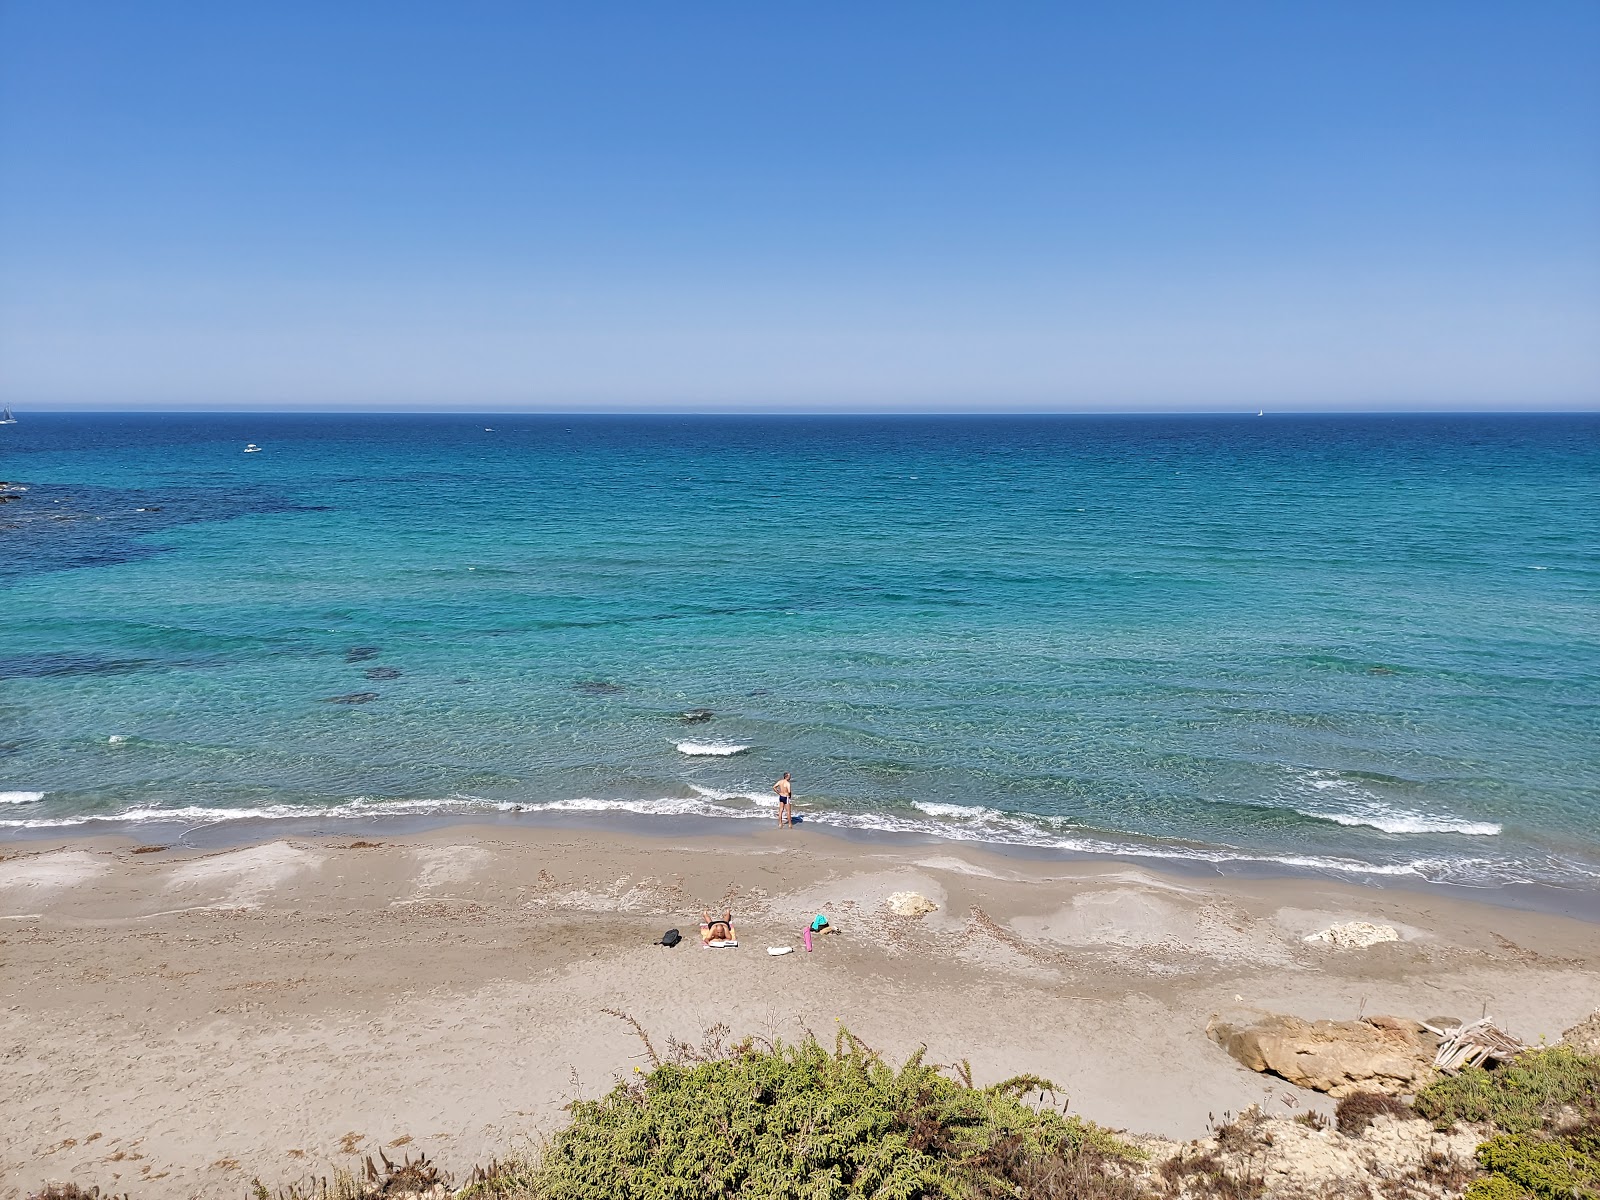 Valokuva Spiaggia di Capo San Marcoista. sijaitsee luonnonalueella